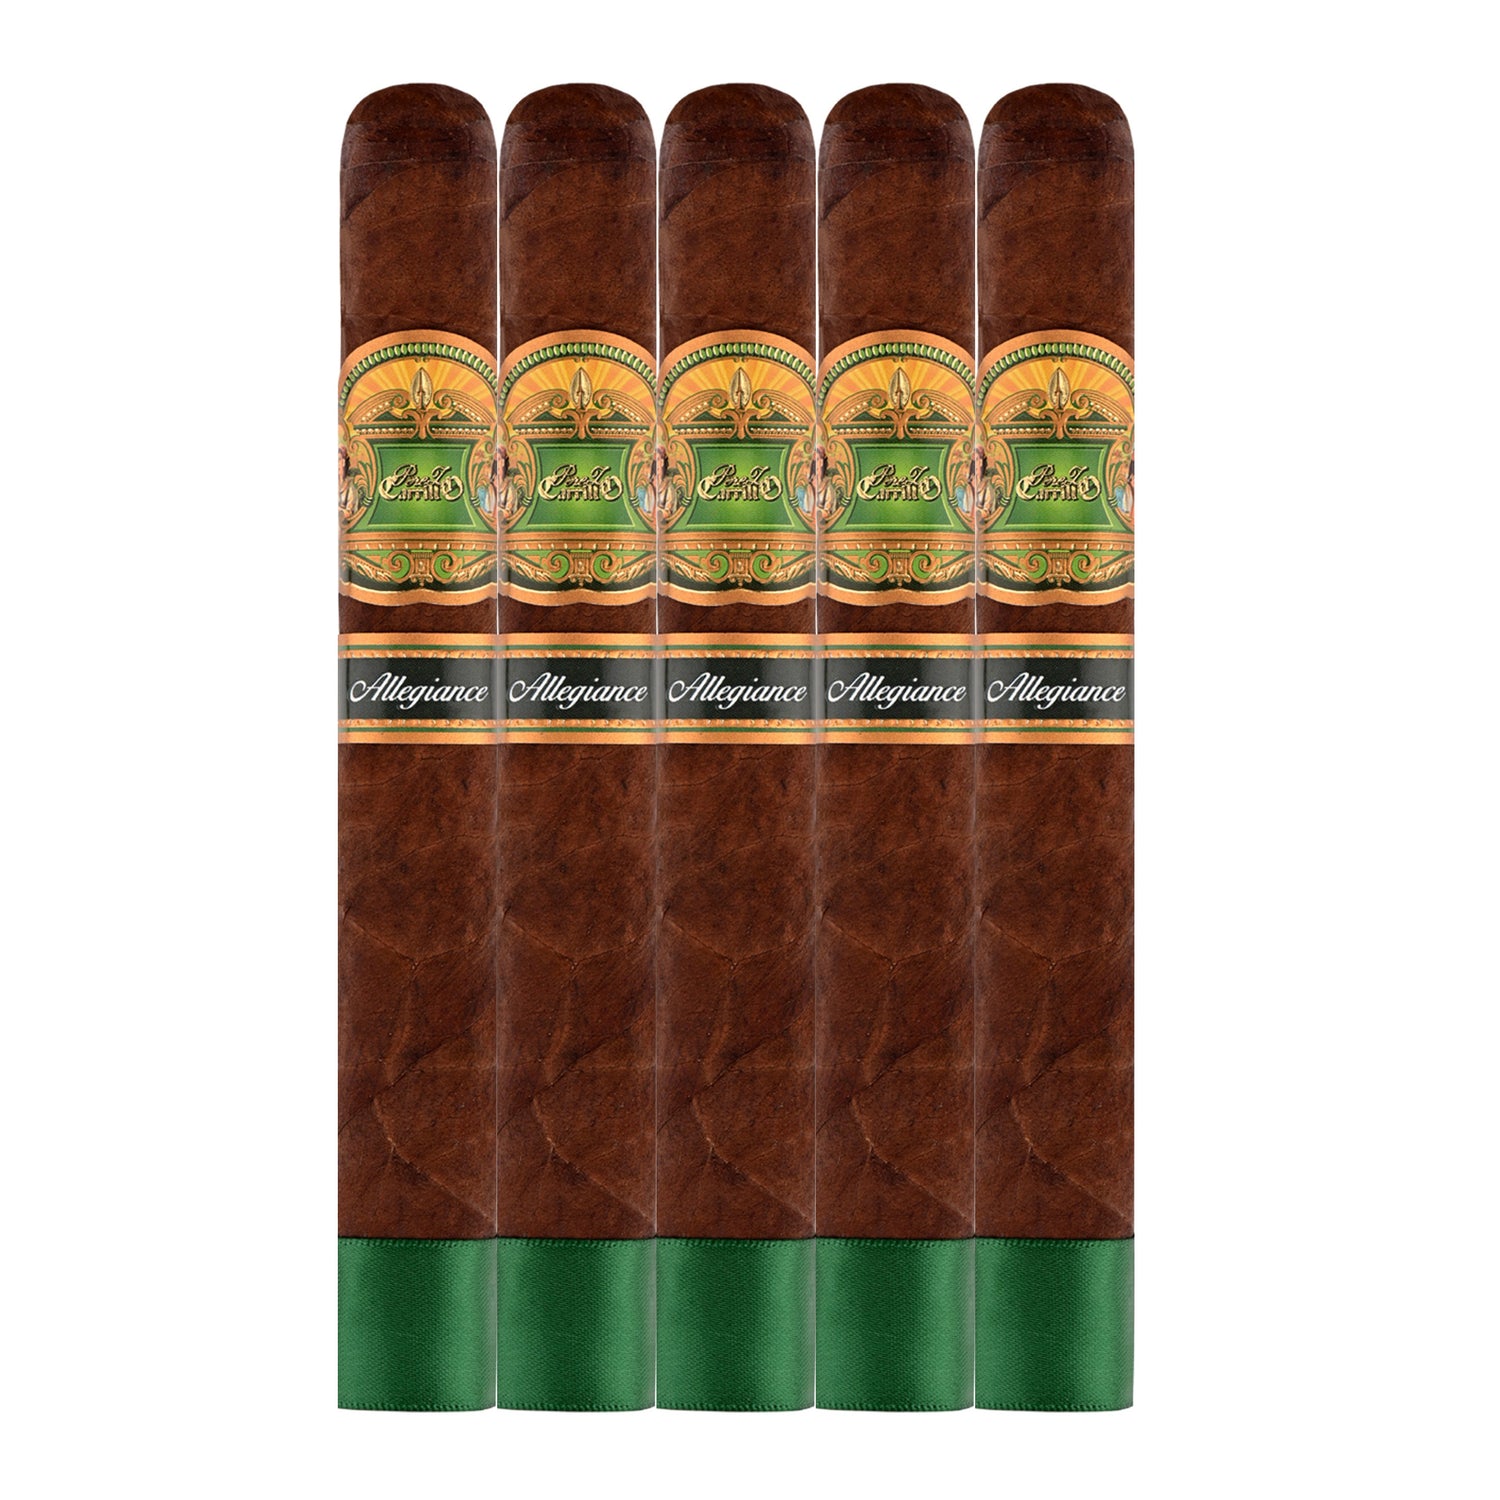 E.P. Carrillo Allegiance Chaperone Cigars